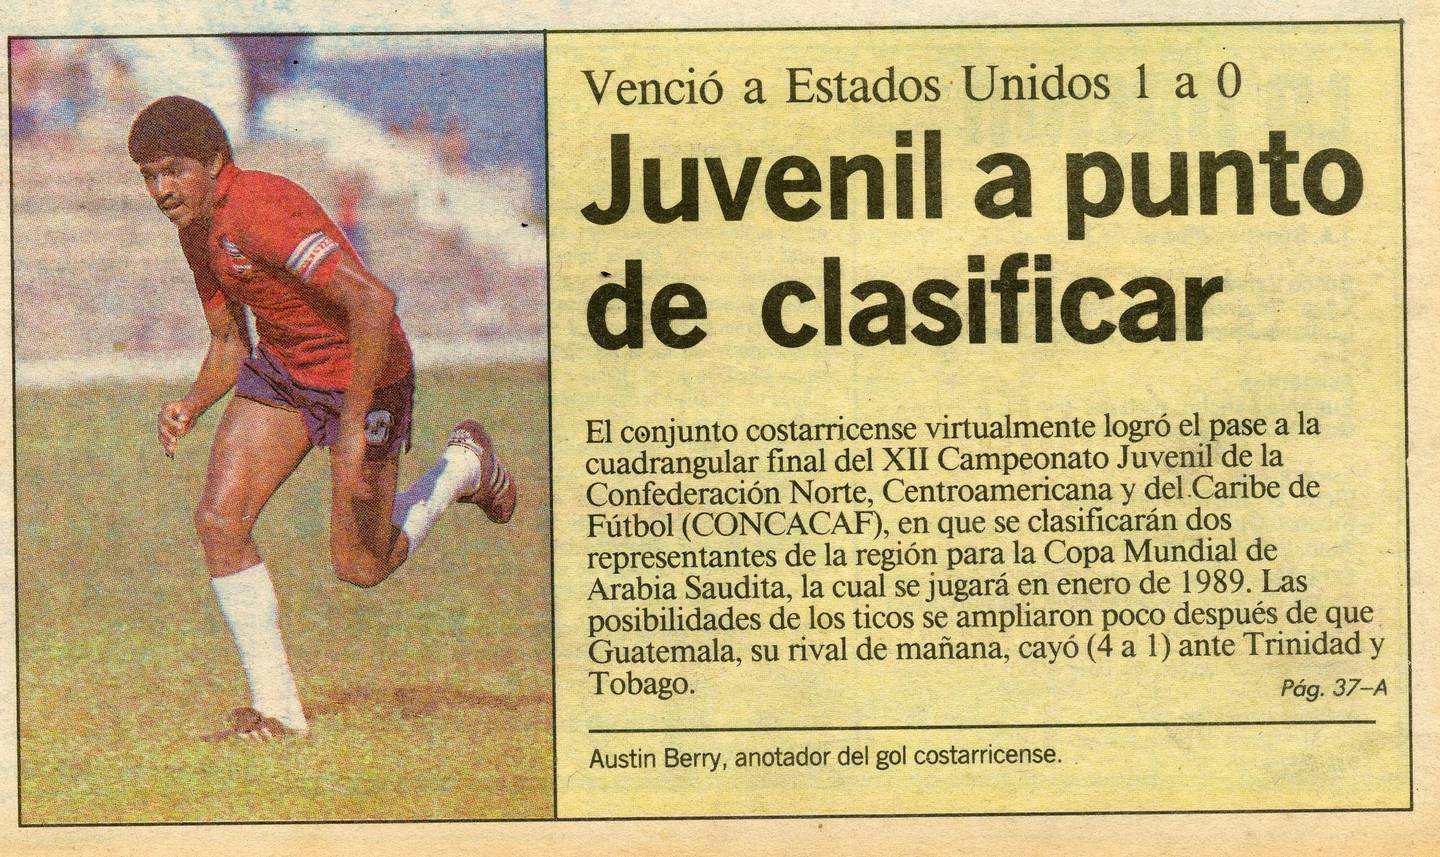 La Selección Sub-20 derrotó a Estados Unidos en el Premundial de 1988 con un gol de Austin Berry. Así lo reseñó 'La Nación' en su portada.